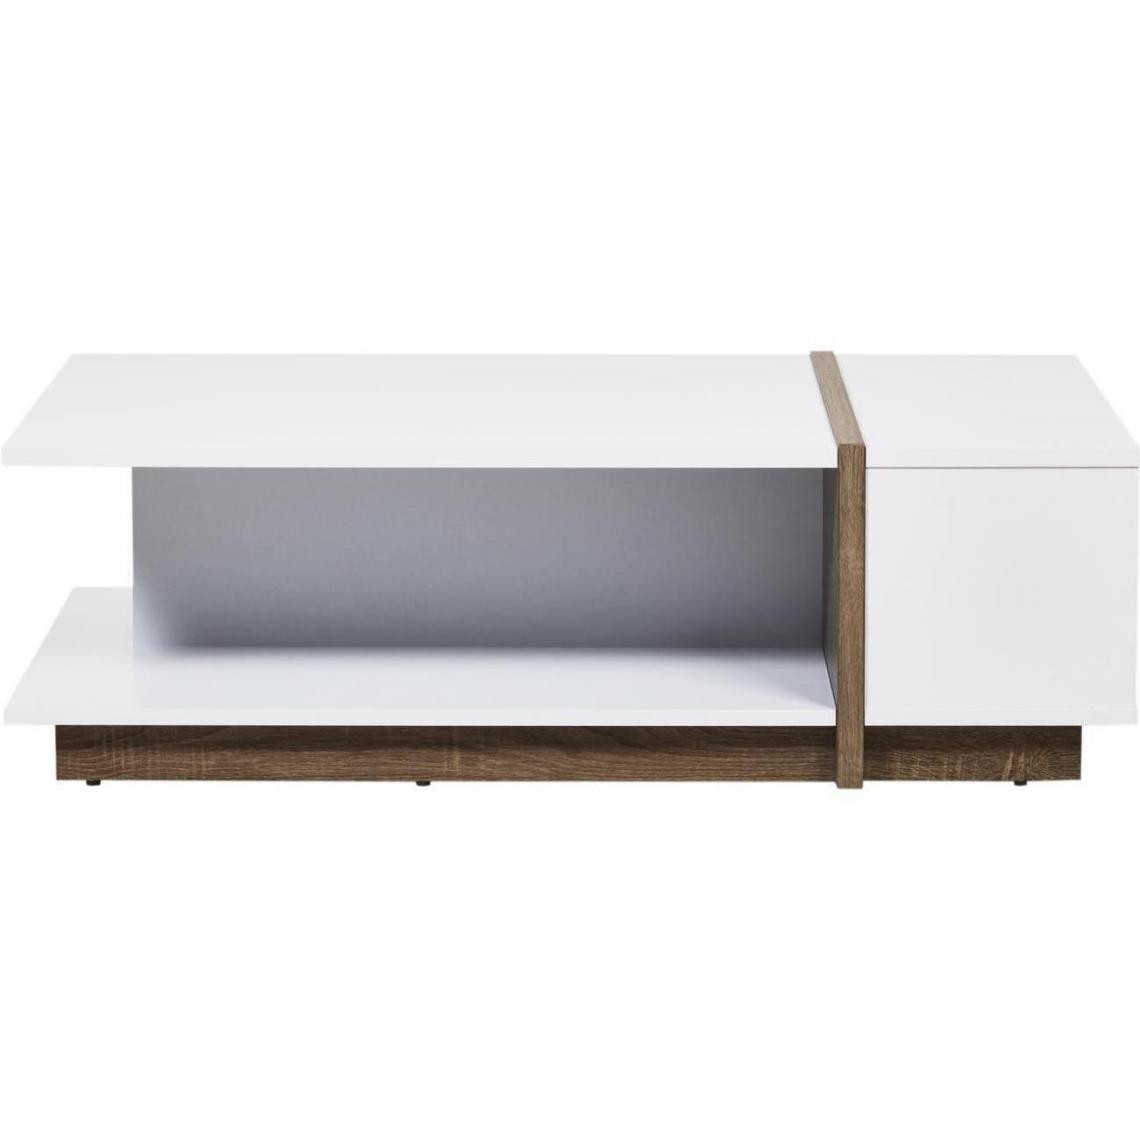 ATHM DESIGN - Table basse PANAMA Blanc - plateau Laque pieds Bois 110 x 60 - Tables basses